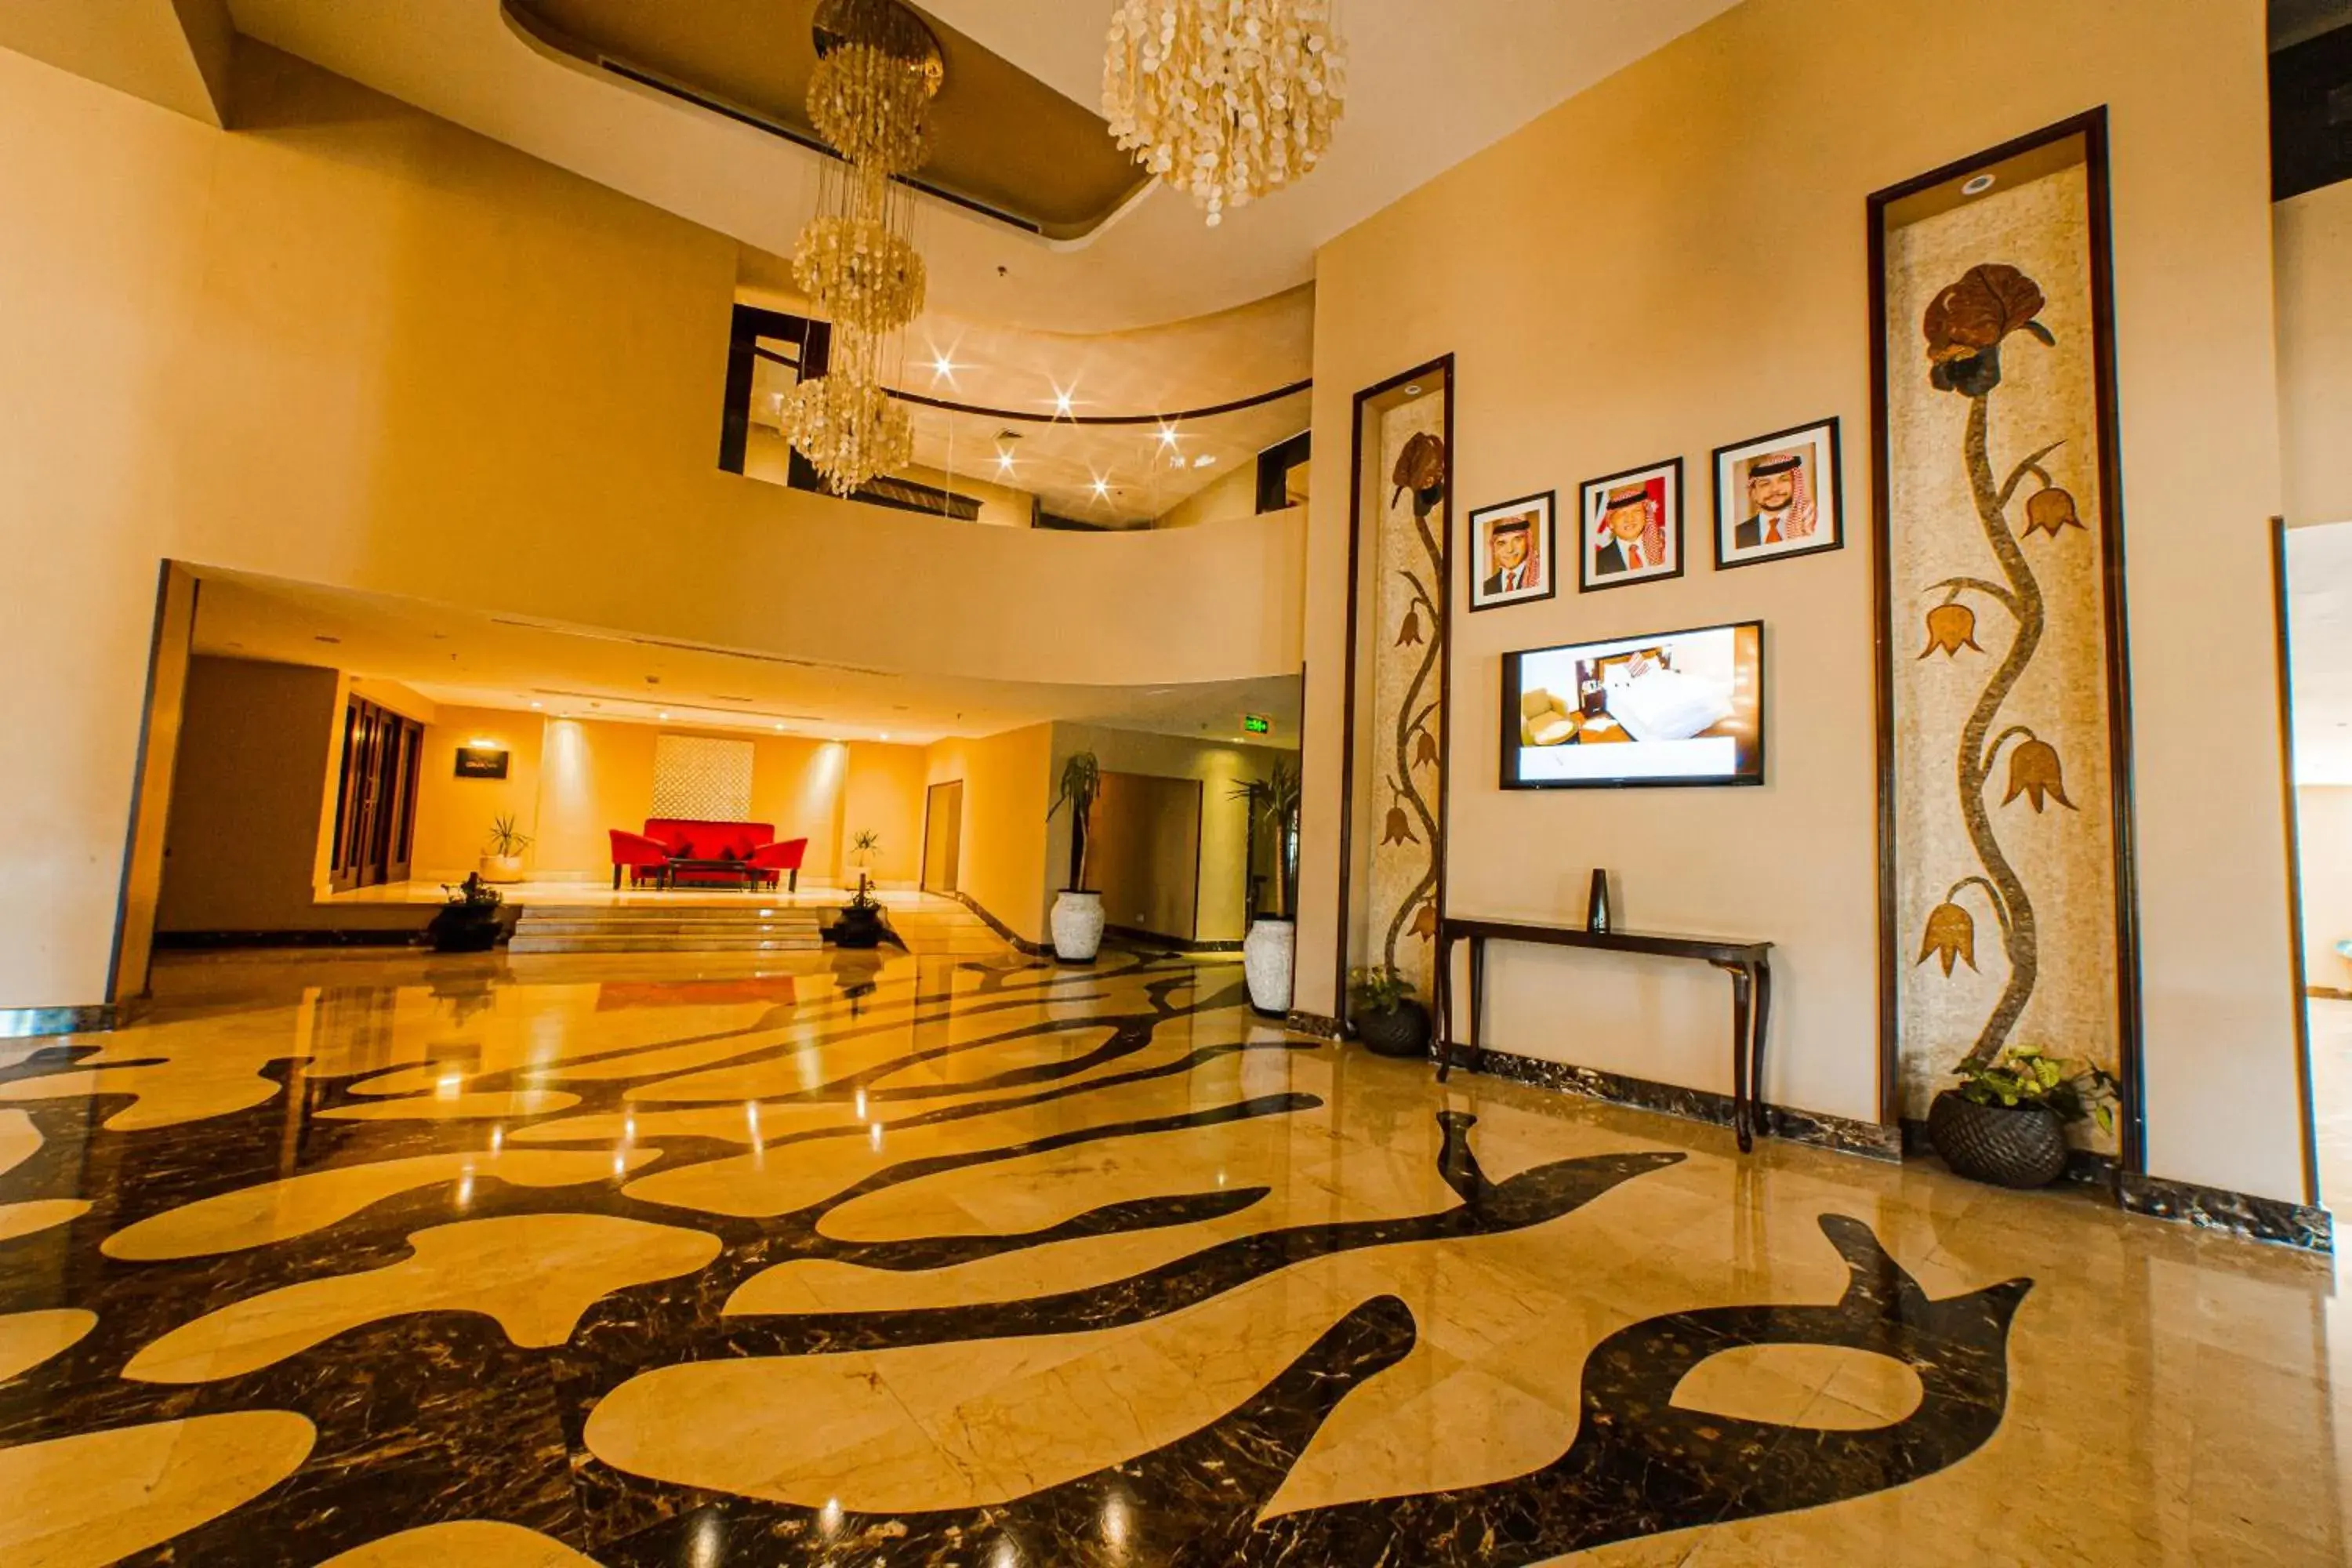 Lobby or reception, Lobby/Reception in Oryx Aqaba